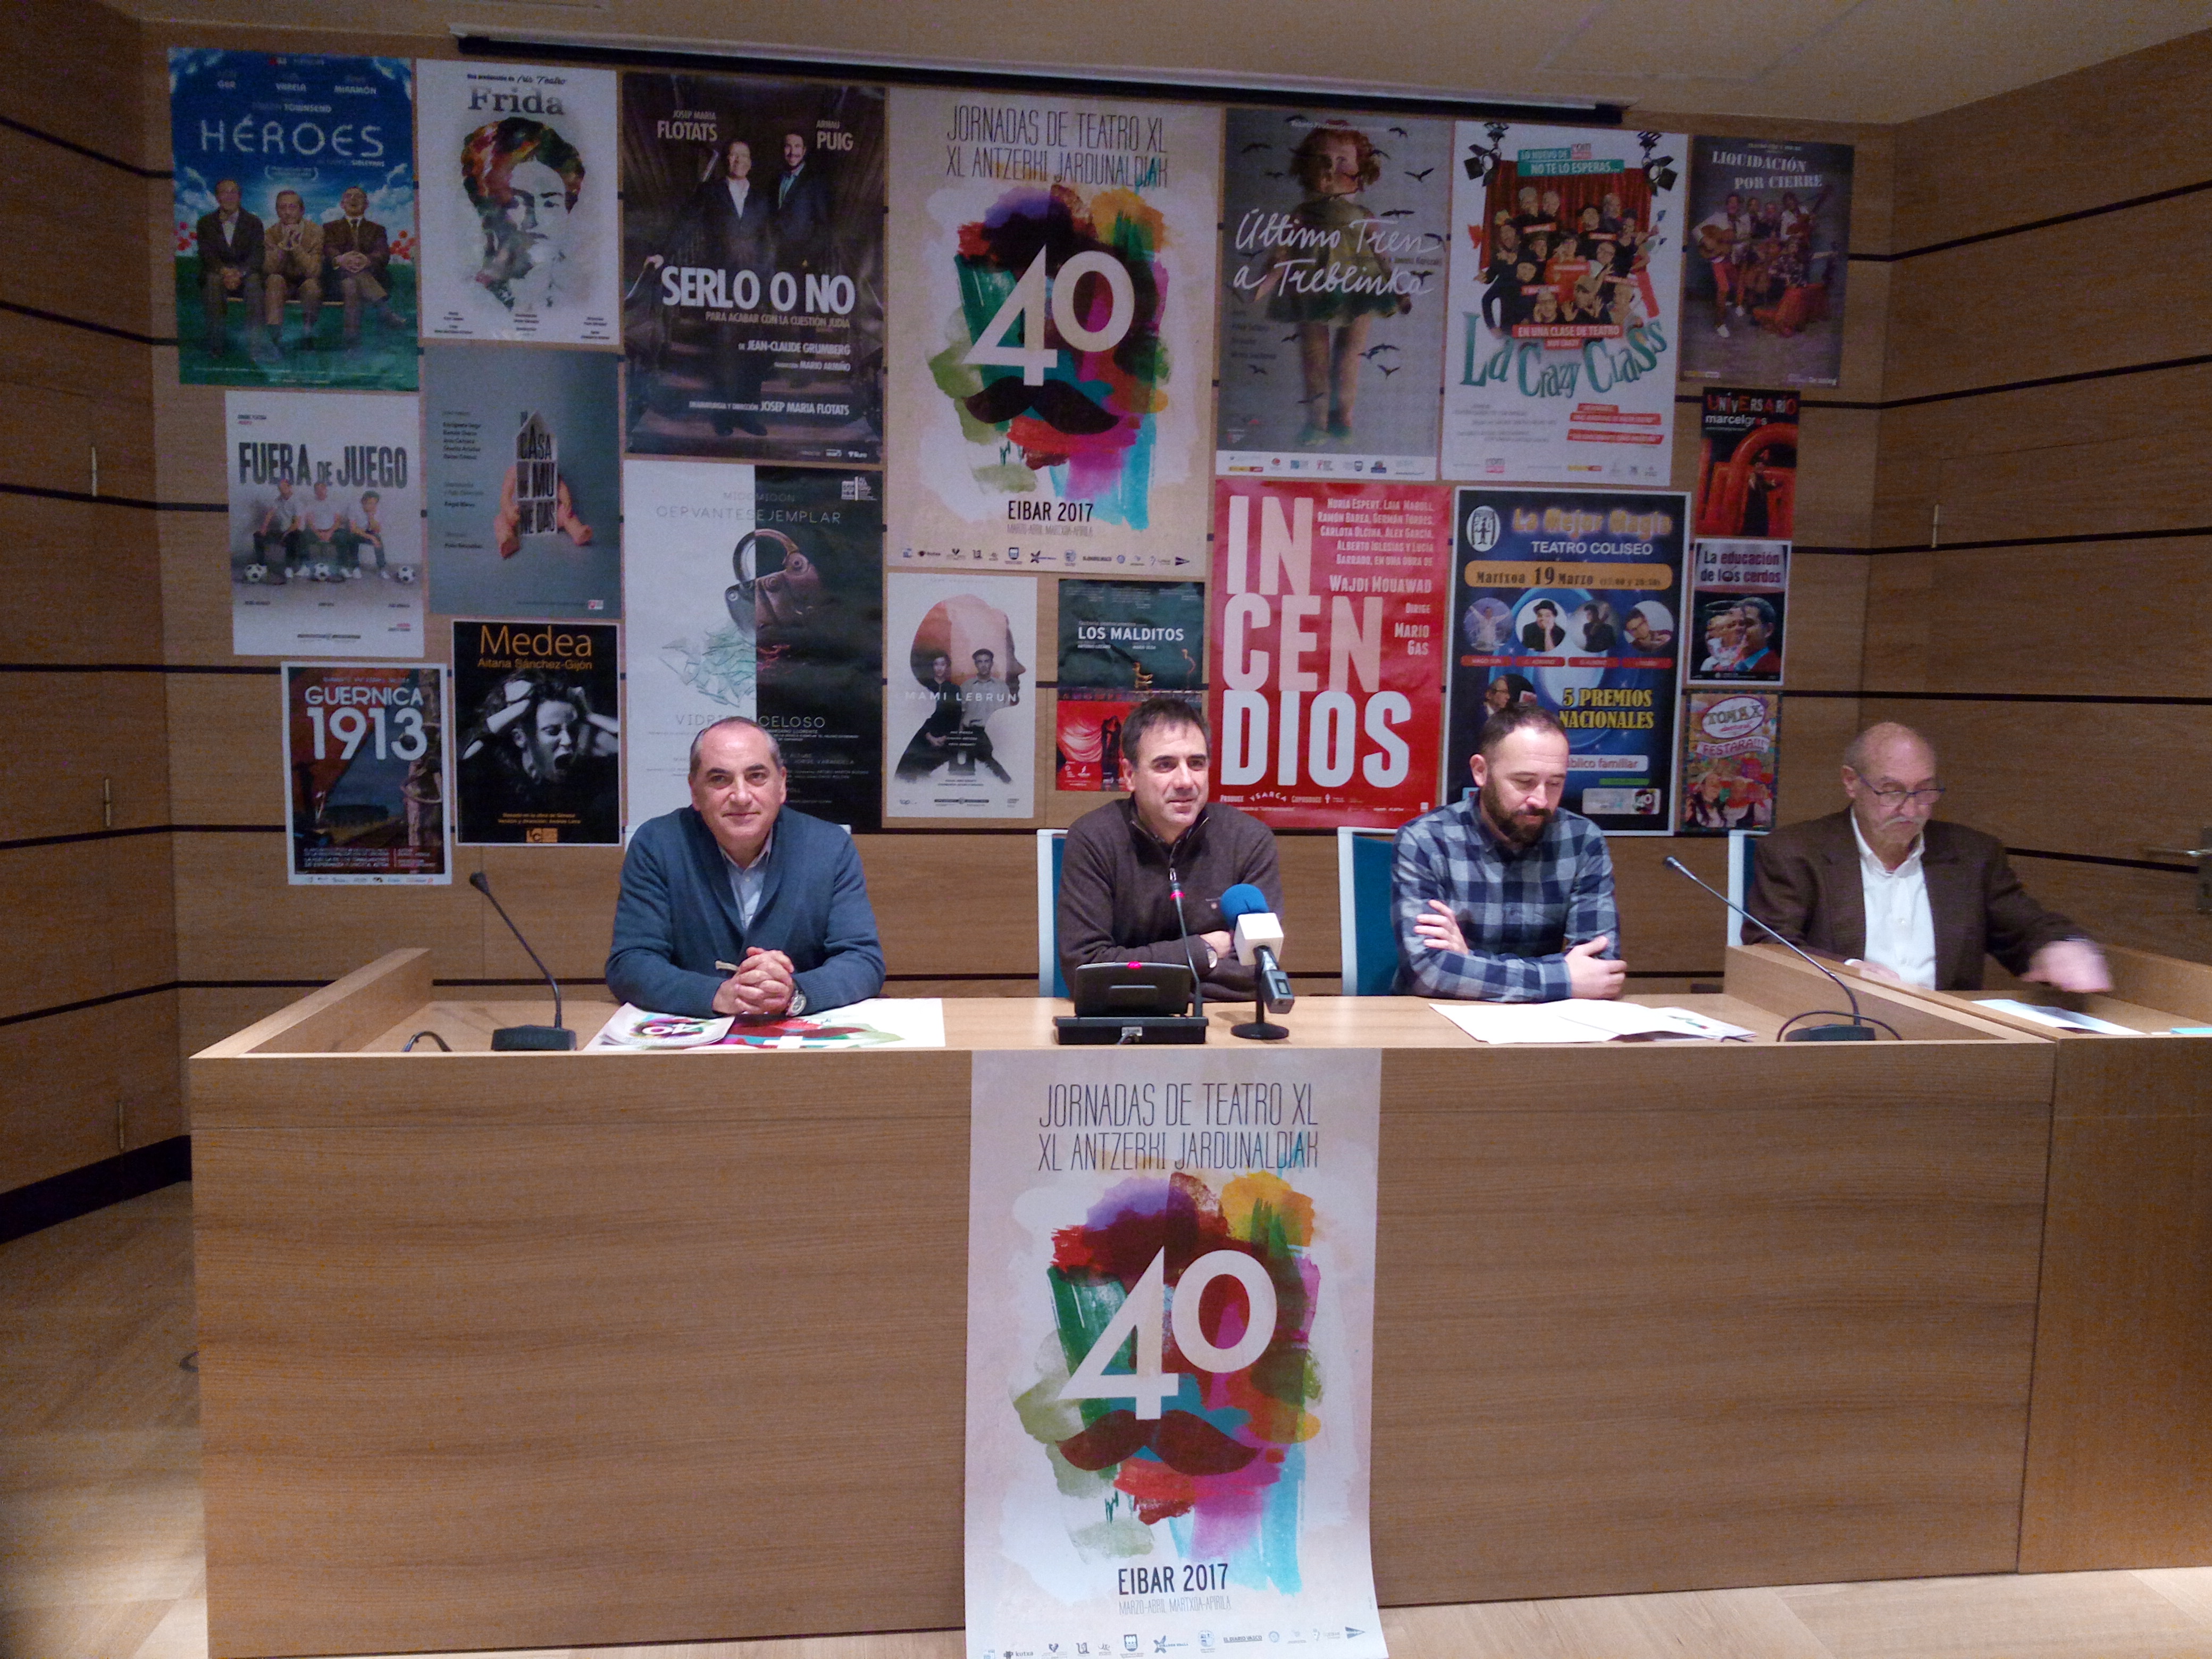 Las Jornadas de Teatro de Eibar cumplen 40 años